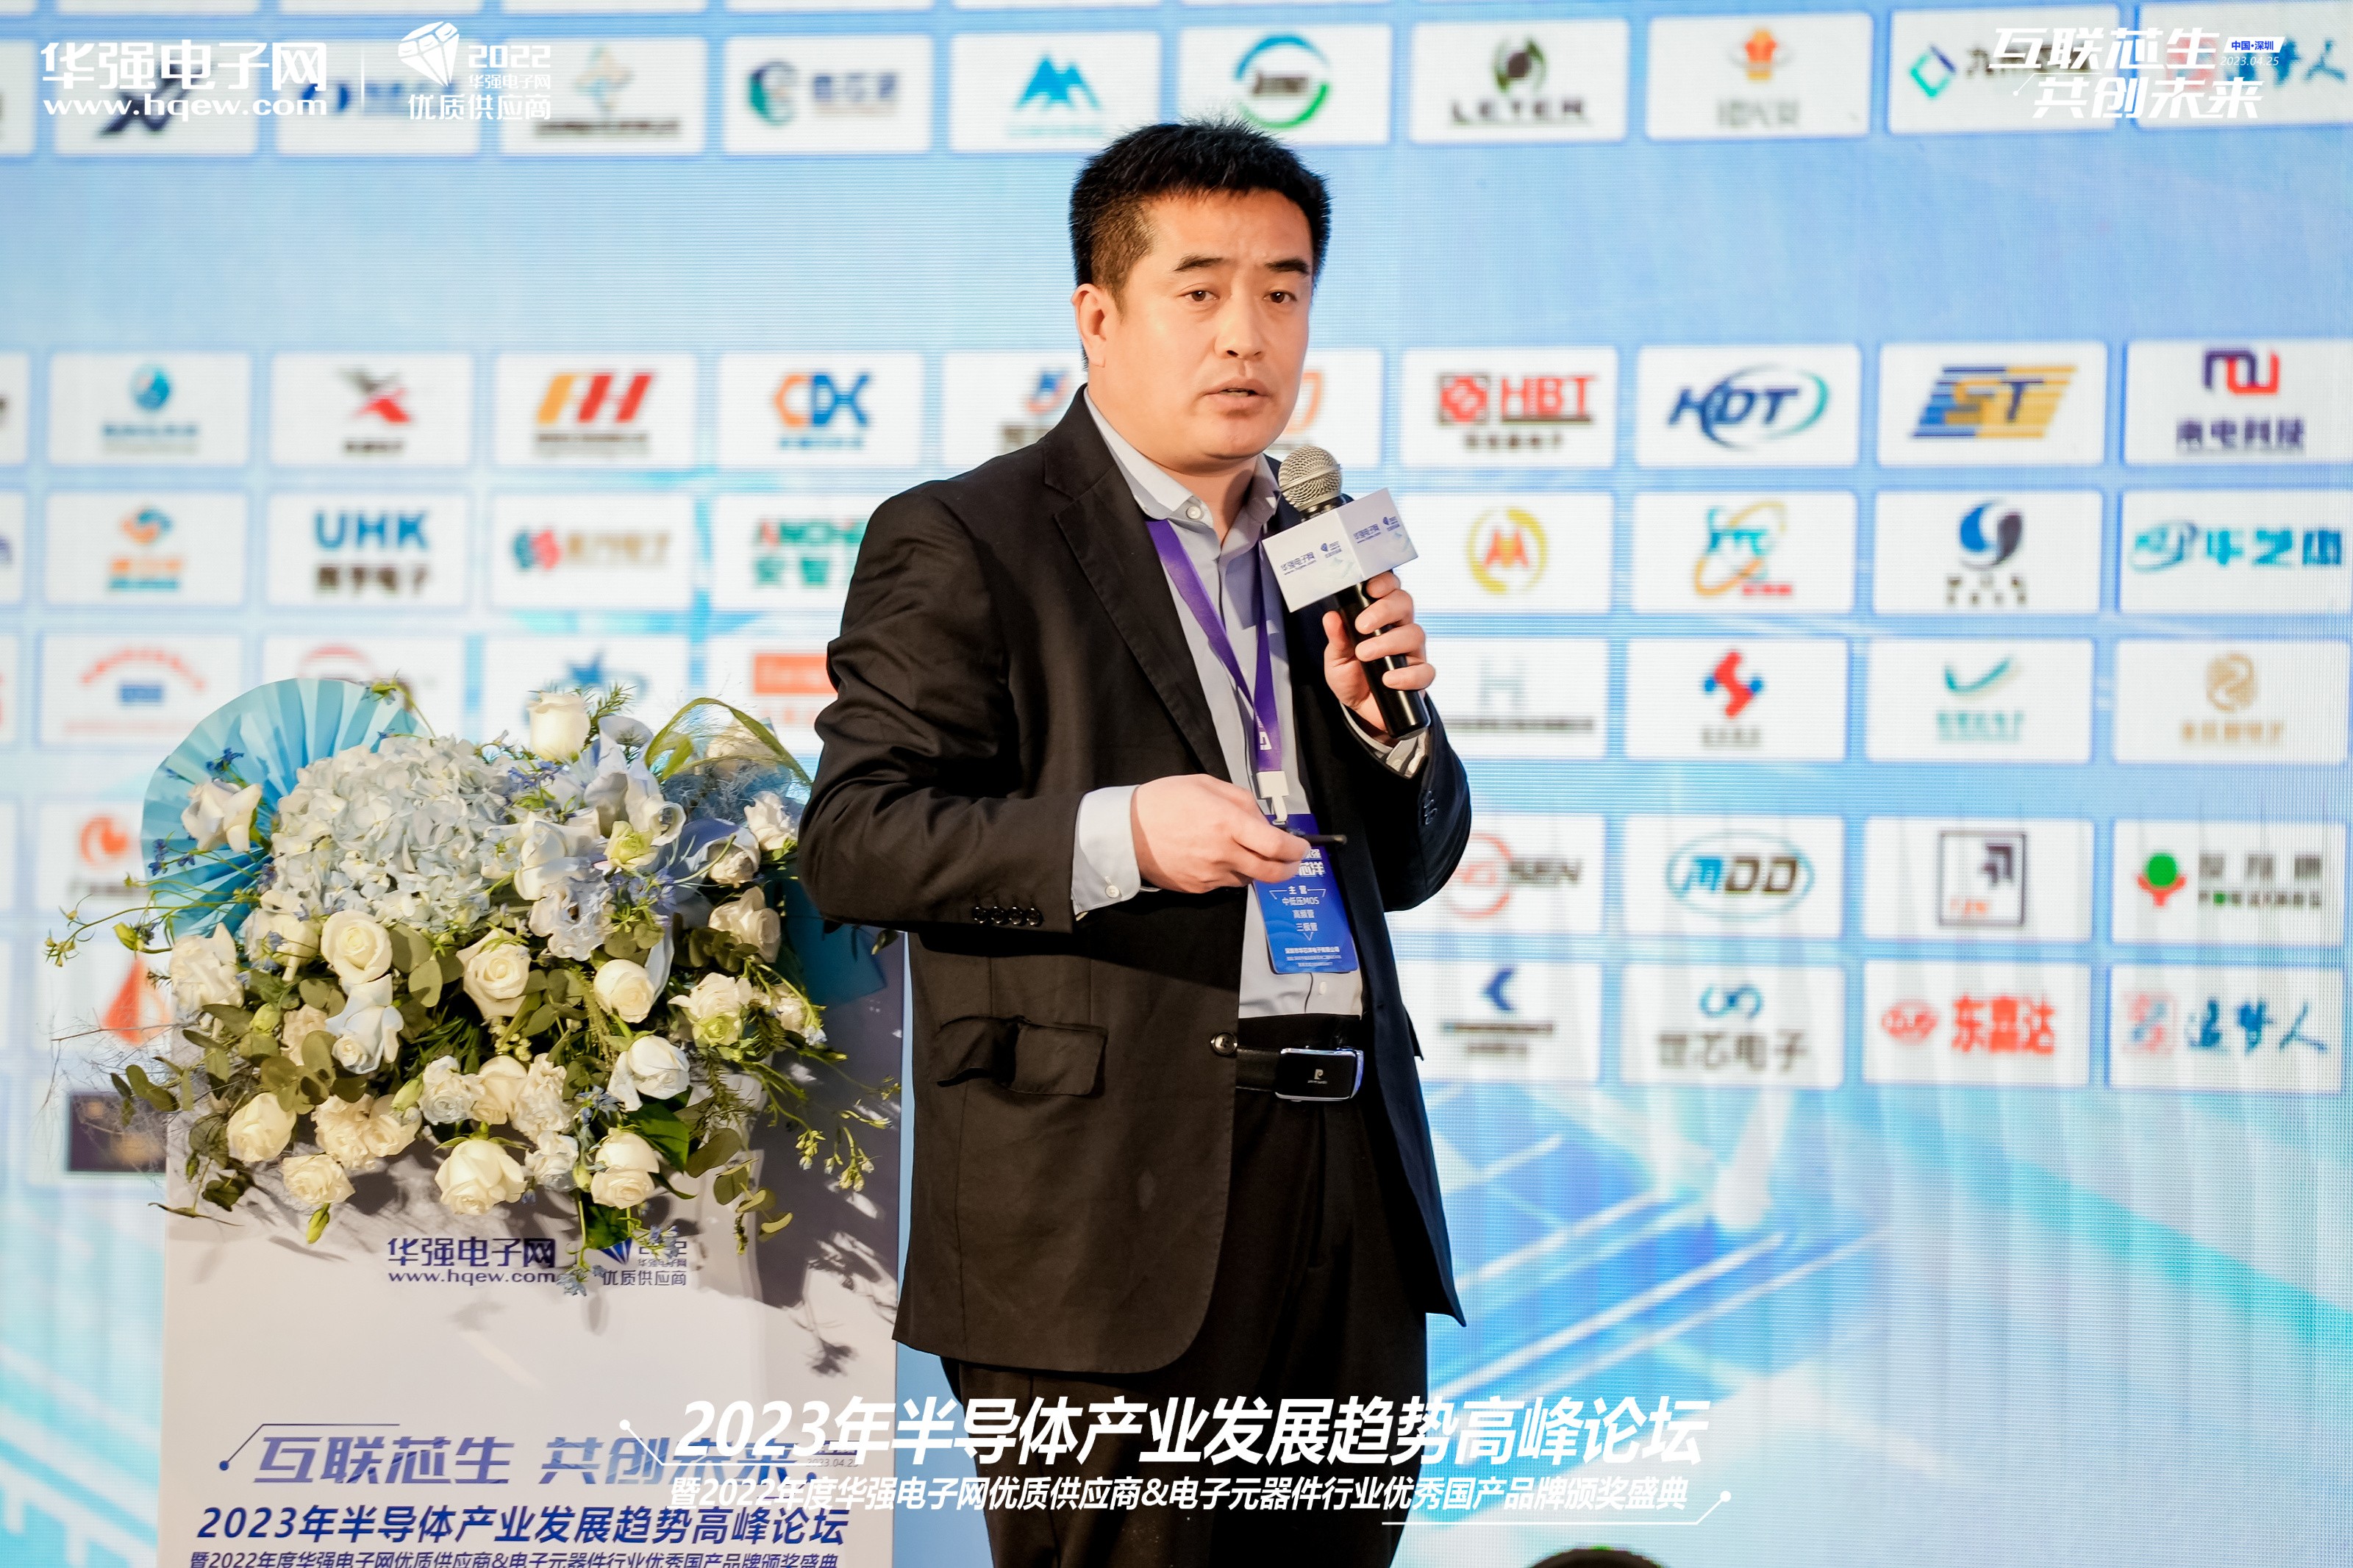 容创未来(天津)新能源有限公司 技术首席专家 时志强